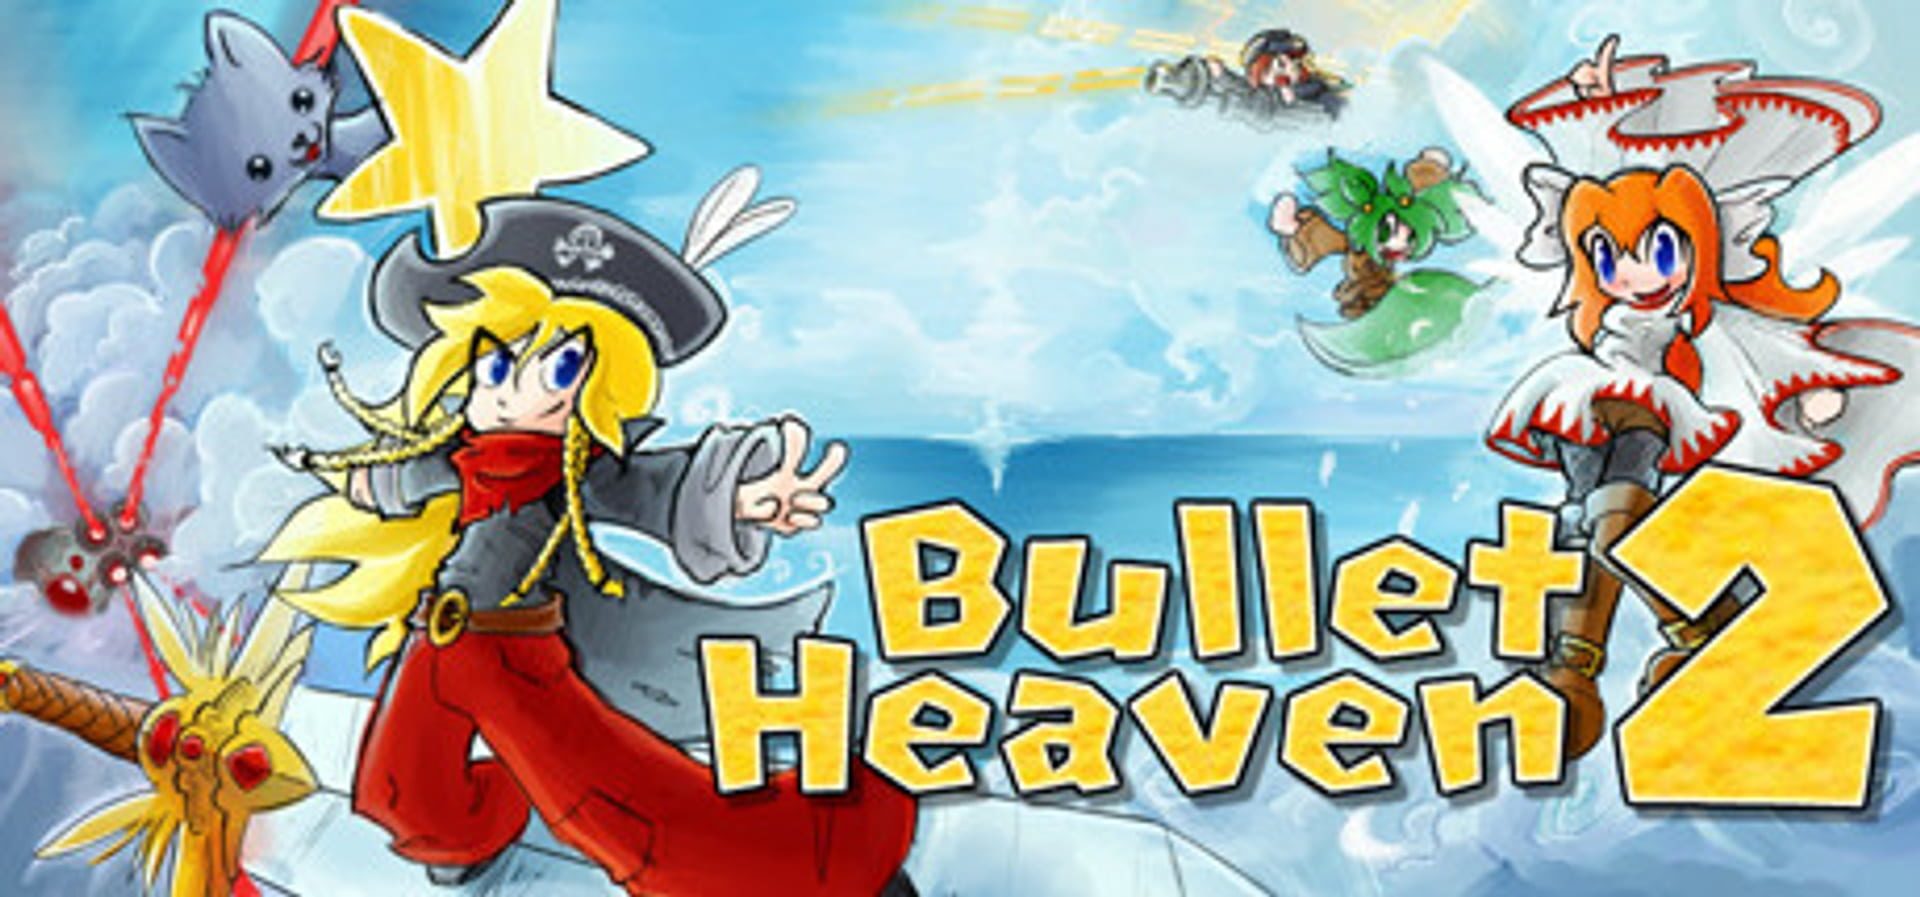 Bullet heaven 2 steam фото 8